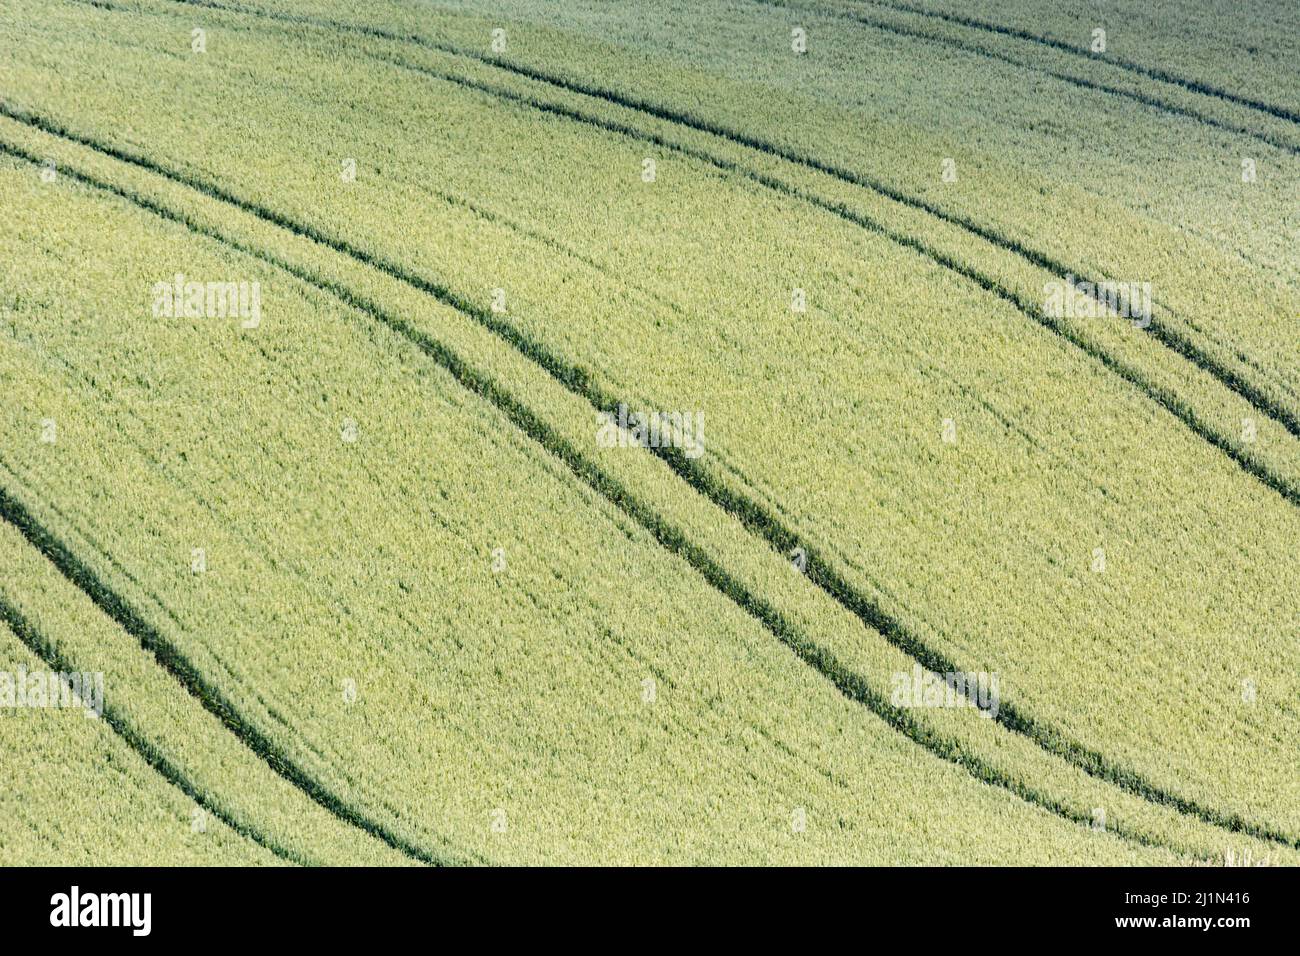 Campi verdi di Inghilterra concetto. In particolare un campo di orzo / Hordeum vulgare. Metafora per il concetto di carestia, sicurezza alimentare, approvvigionamento alimentare UK. Foto Stock